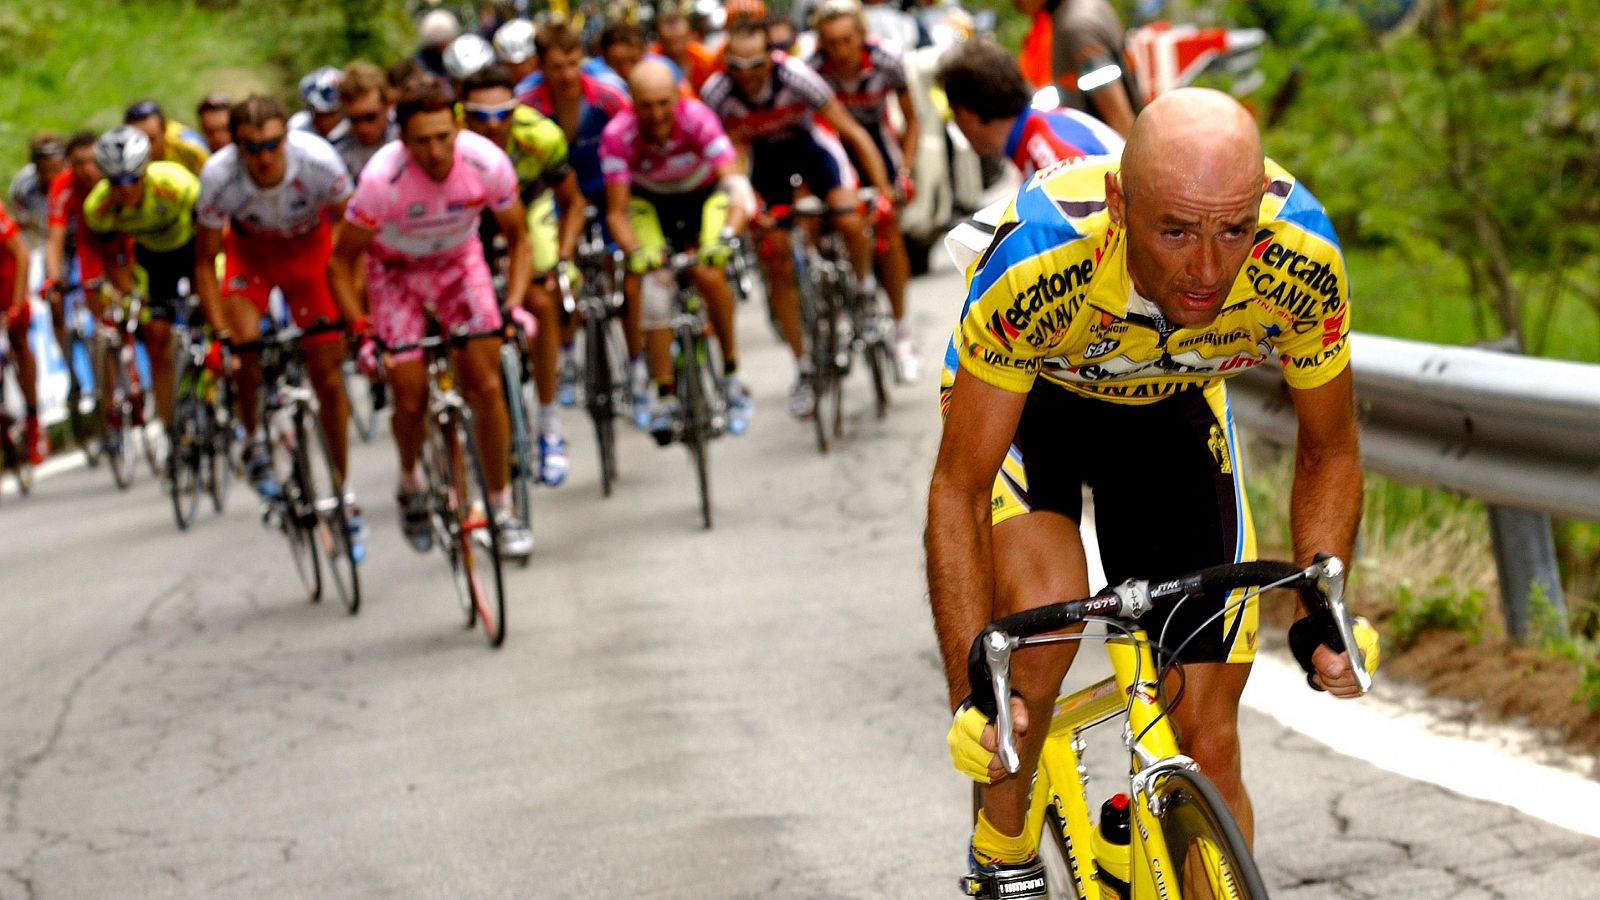 Ciclismo | Se cumplen 20 años desde la muerte de Marco Pantani